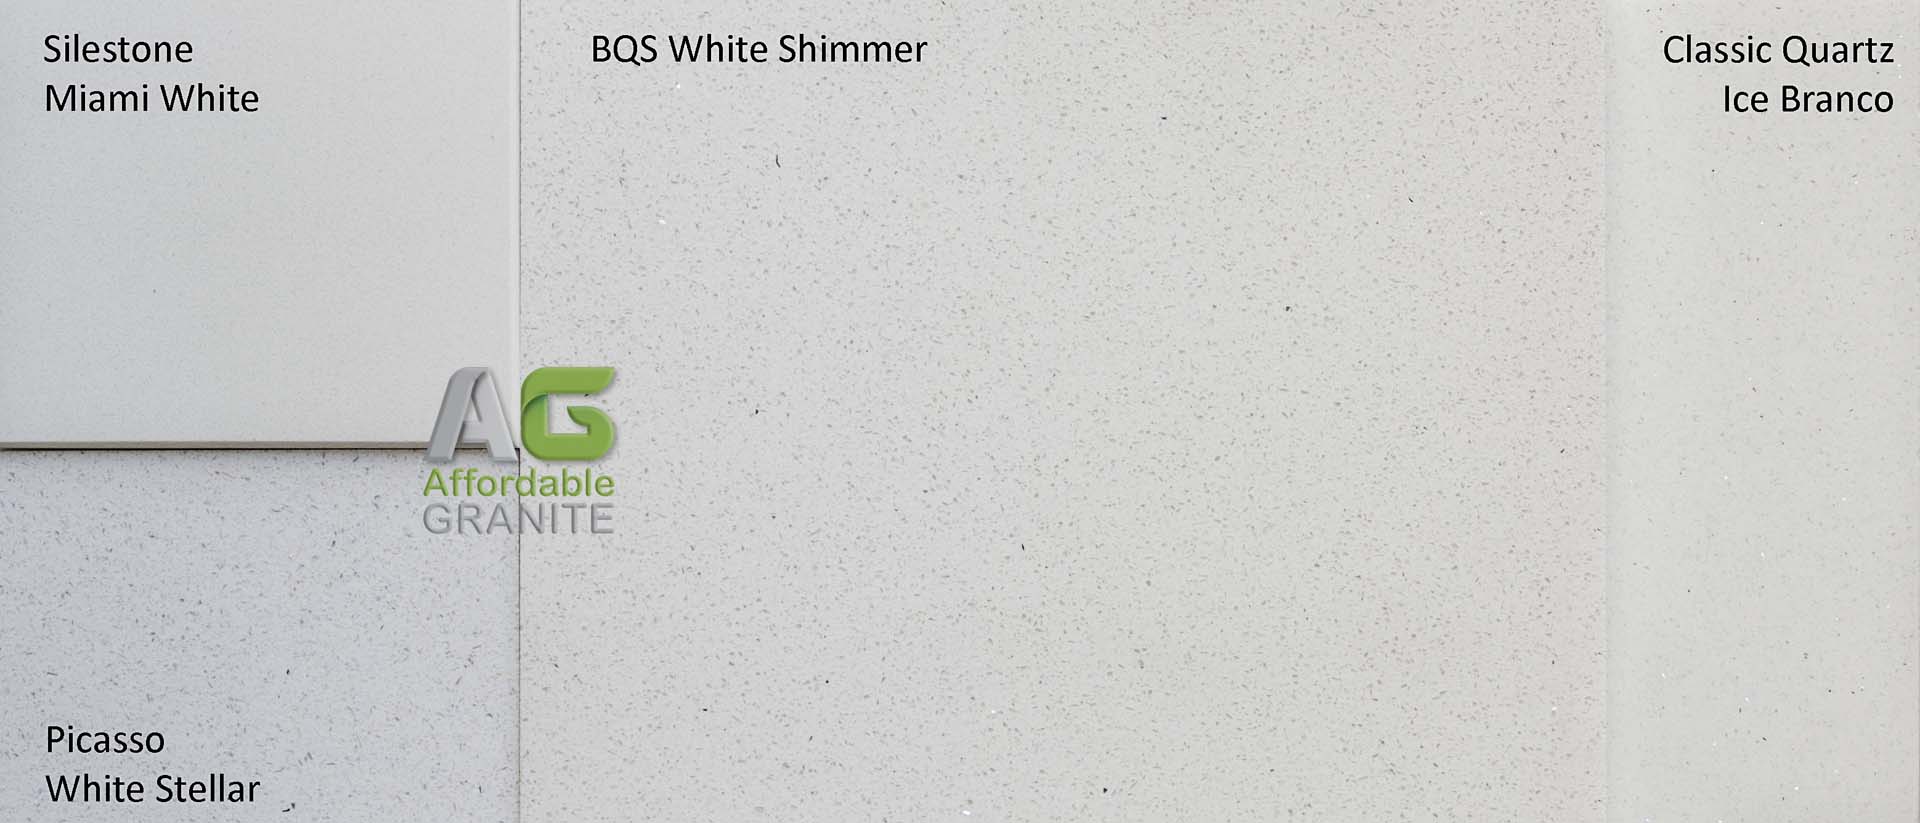 180201 Silestone Miami white picasso white stellar classic quartz ice branco BQS white shimmer